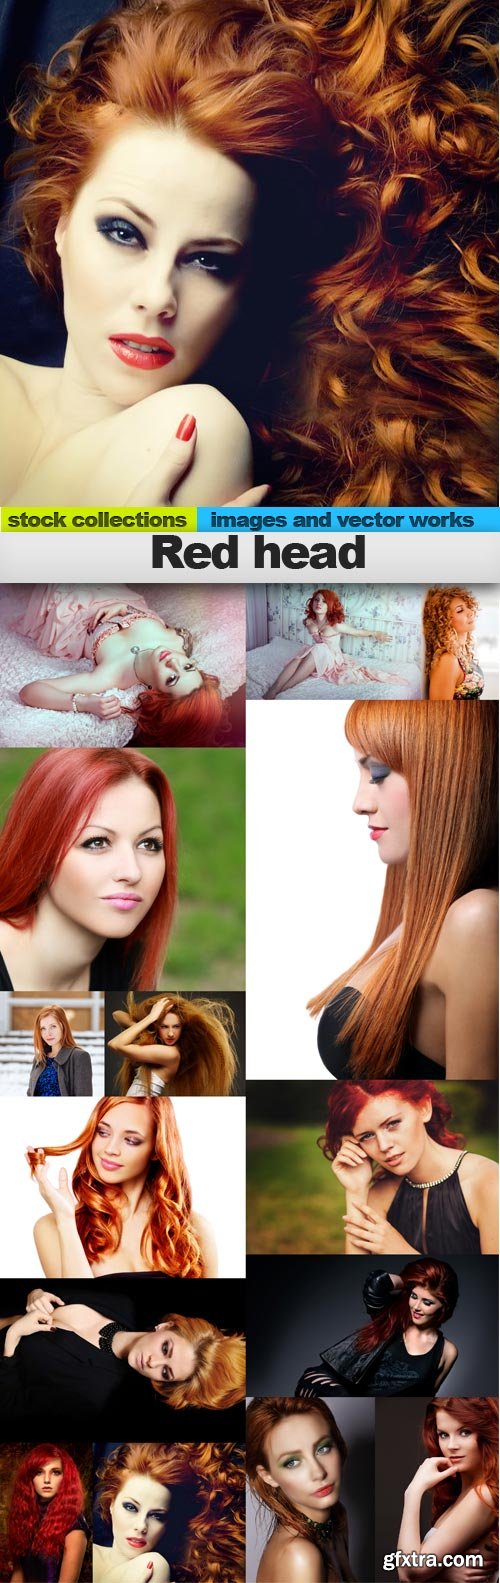 Red head, 15 x UHQ JPEG